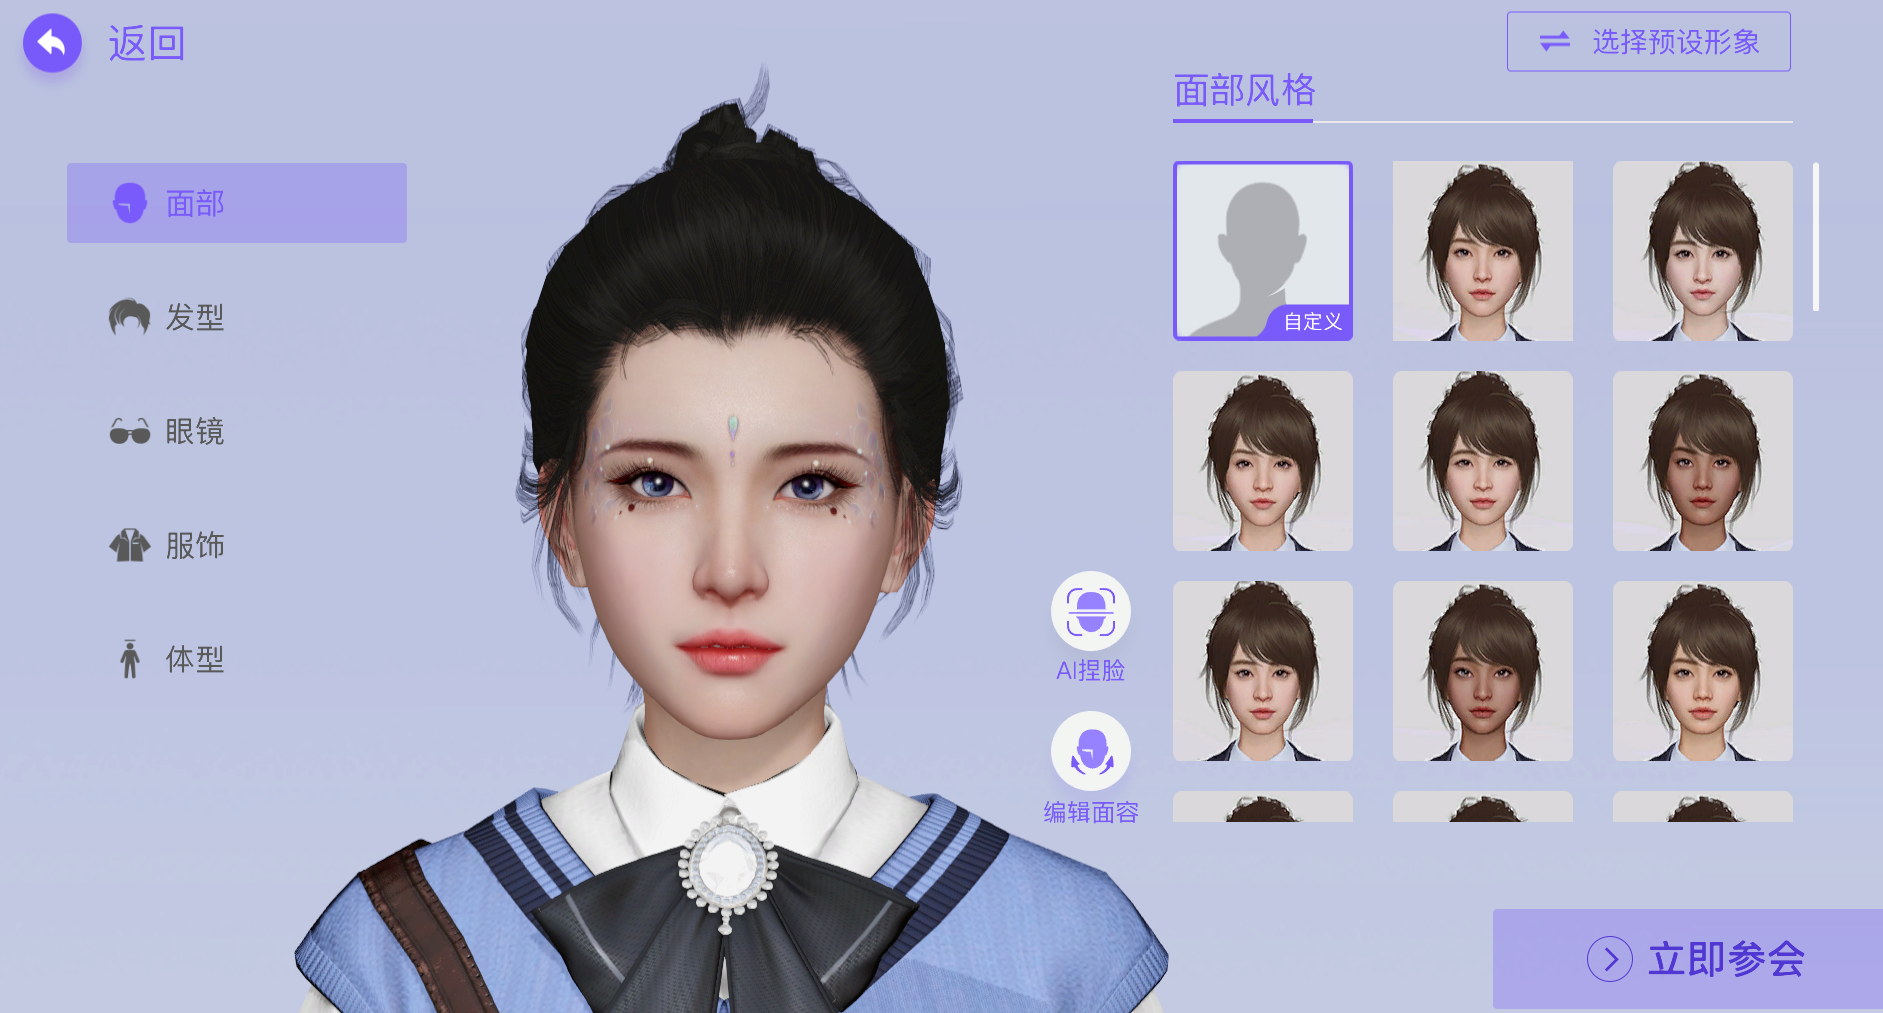 这是一张游戏角色创建界面的截图，展示了一个女性角色的正面头像，以及不同发型选项的缩略图。